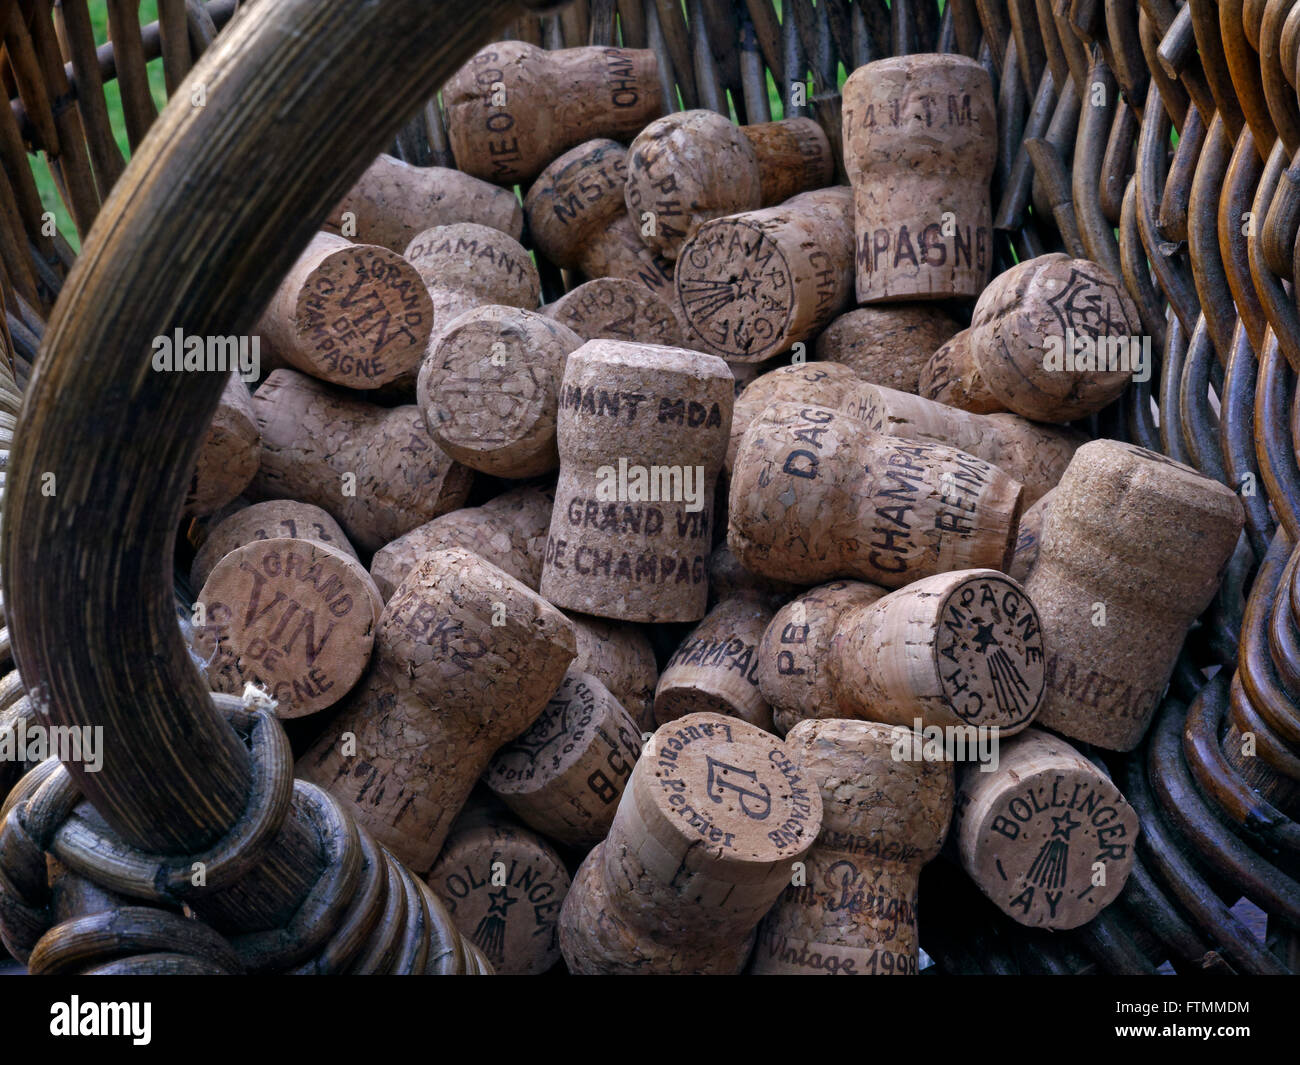 Konzept-Bild der französischen Weinleser Ernte Korb mit hochwertige Auswahl  an verschiedenen Luxus Champagner-Korken Frankreich Stockfotografie - Alamy